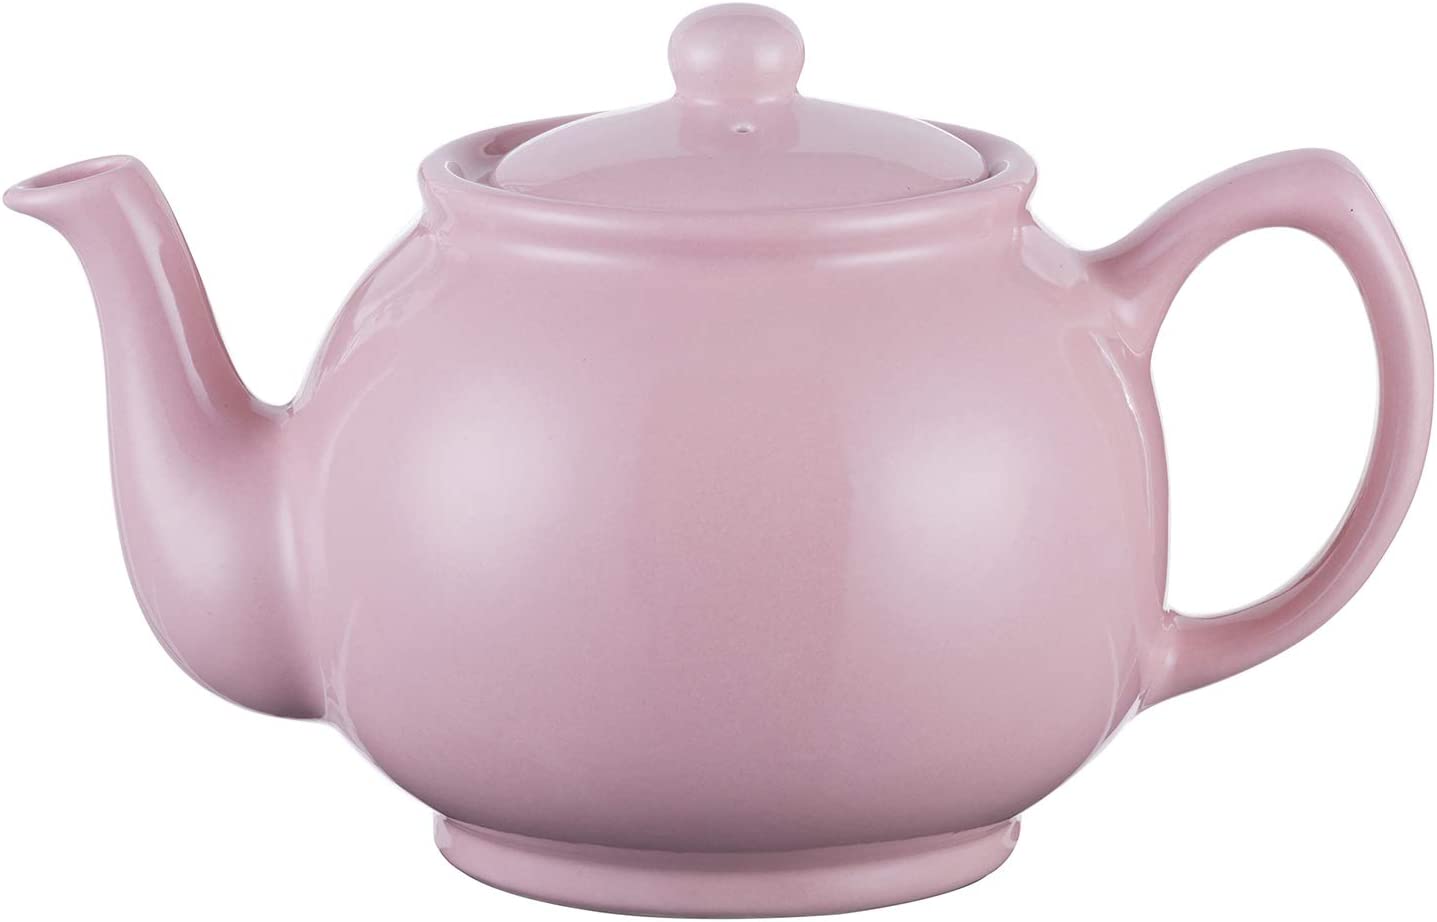 PRICE & KENSINGTON 6 Cup Teapot | Pink